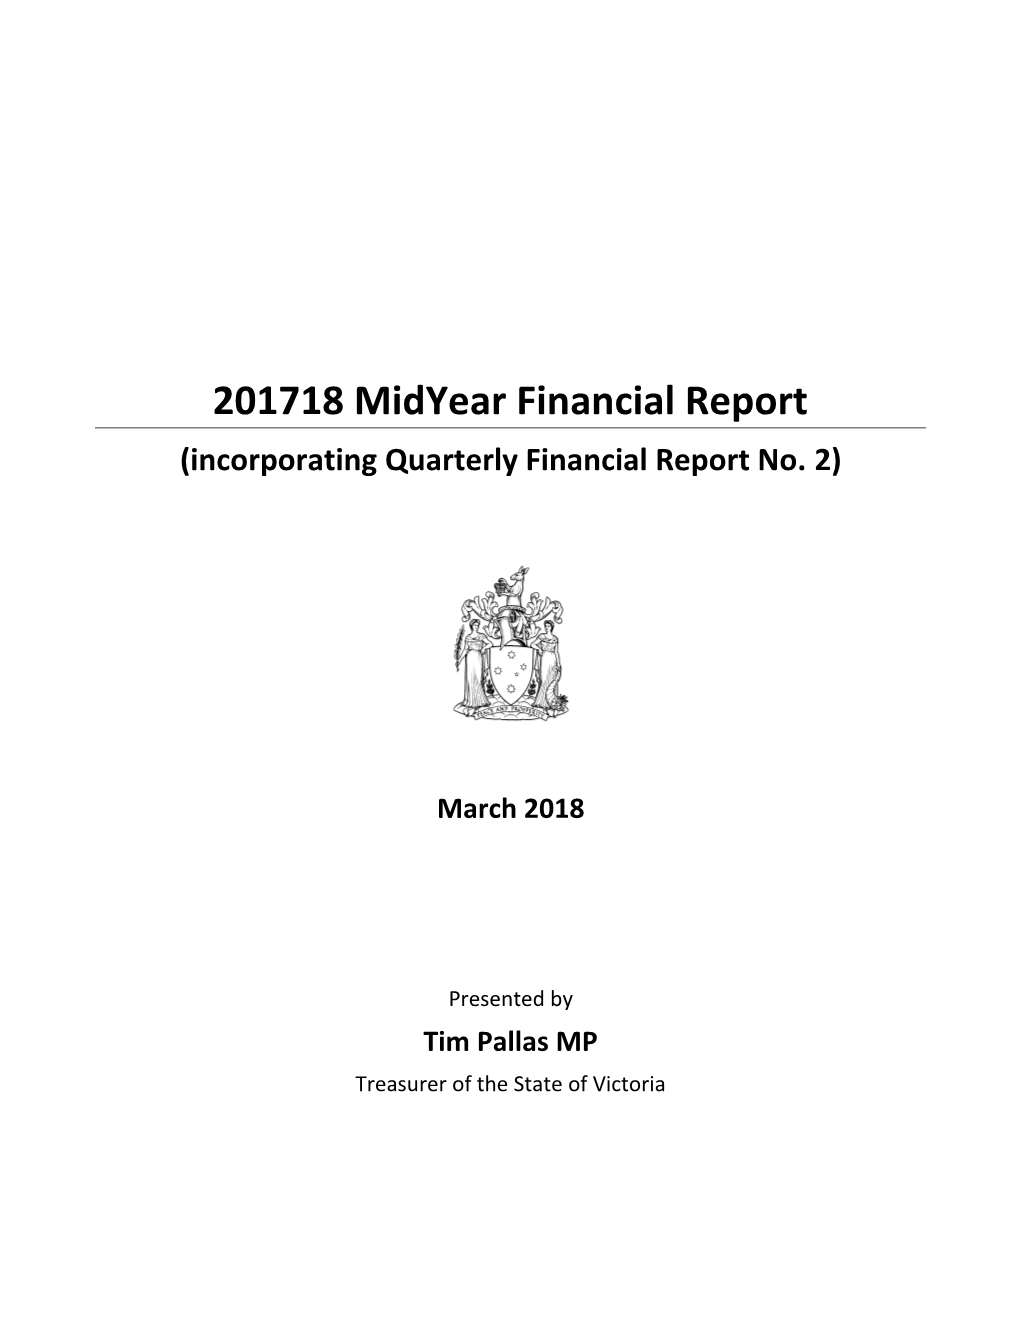 Incorporating Quarterly Financial Report No.2